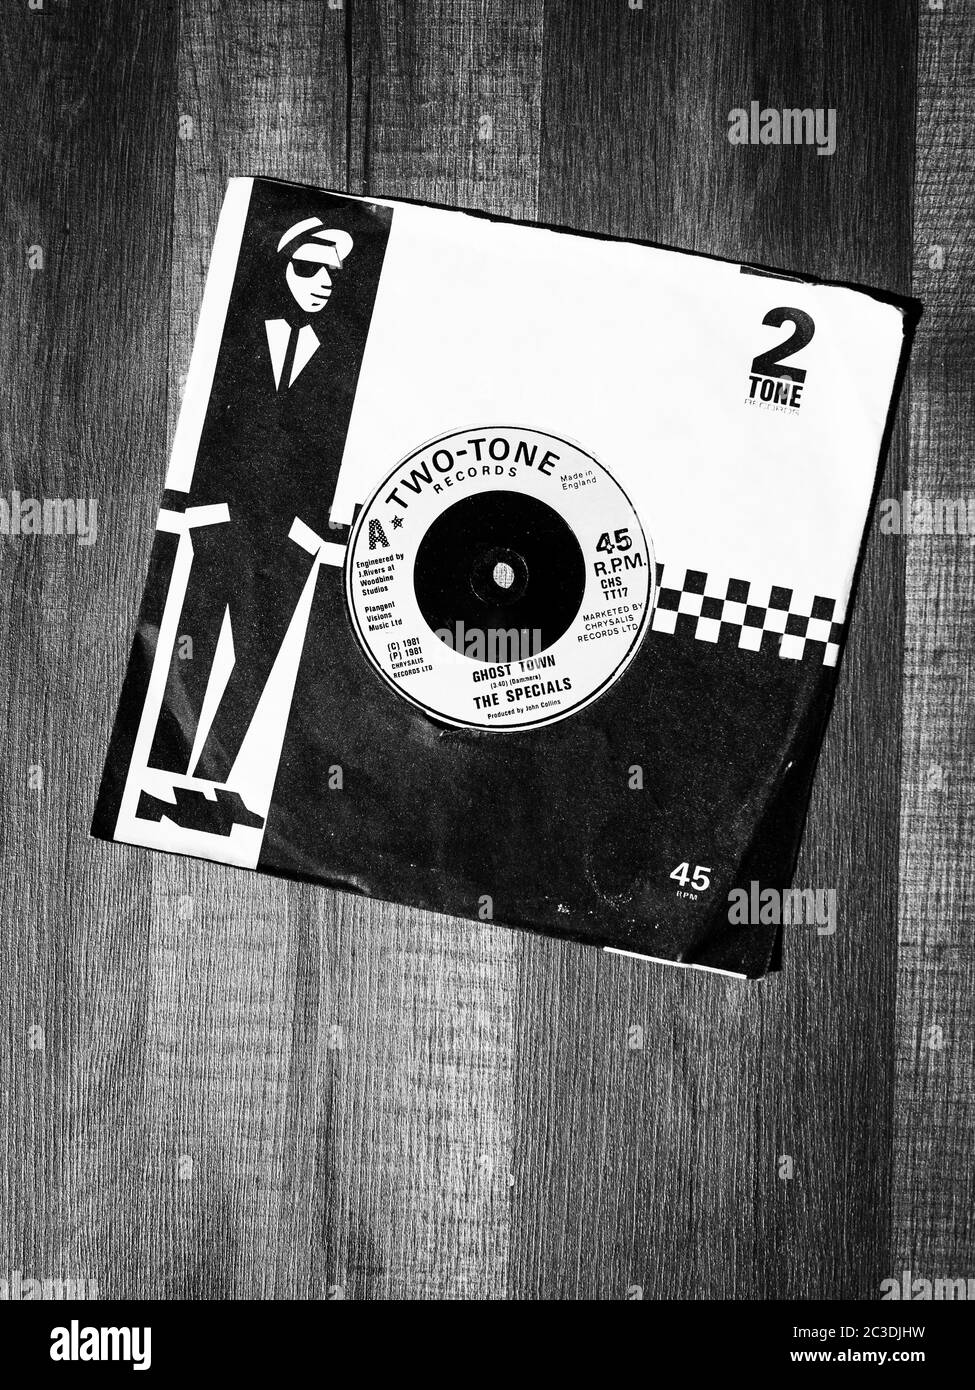 Londres, Inglaterra - 21 de mayo de 2020: Ghost Town 7 pulgadas single por los Especiales, lanzado el 12 de junio de 1981 por dos-Tone Records Foto de stock